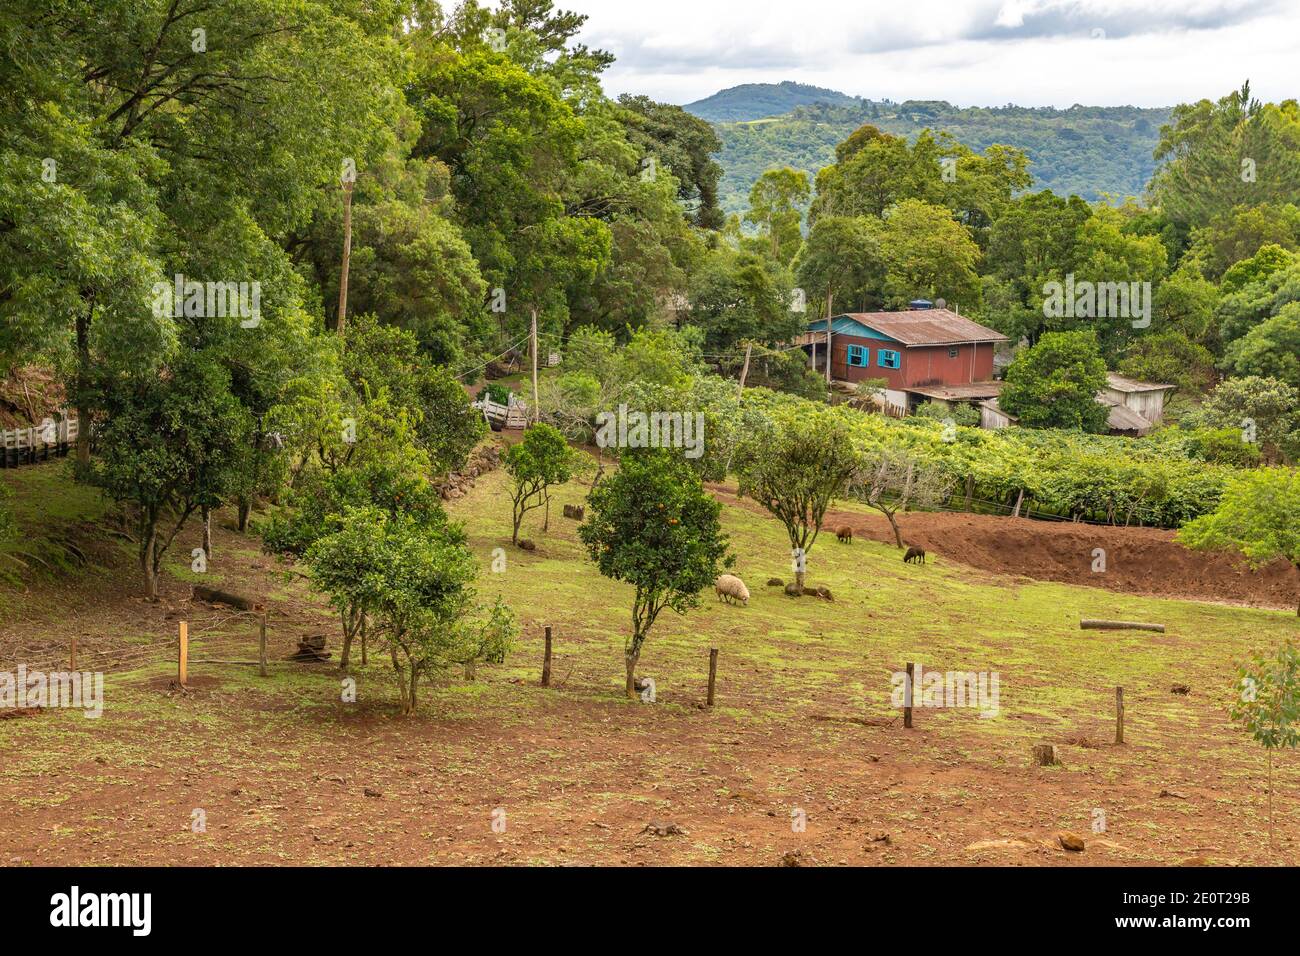 Small farm and forest in Morro do Xaxim mountain, Igrejinha, Rio Grande do Sul, Brazil Stock Photo